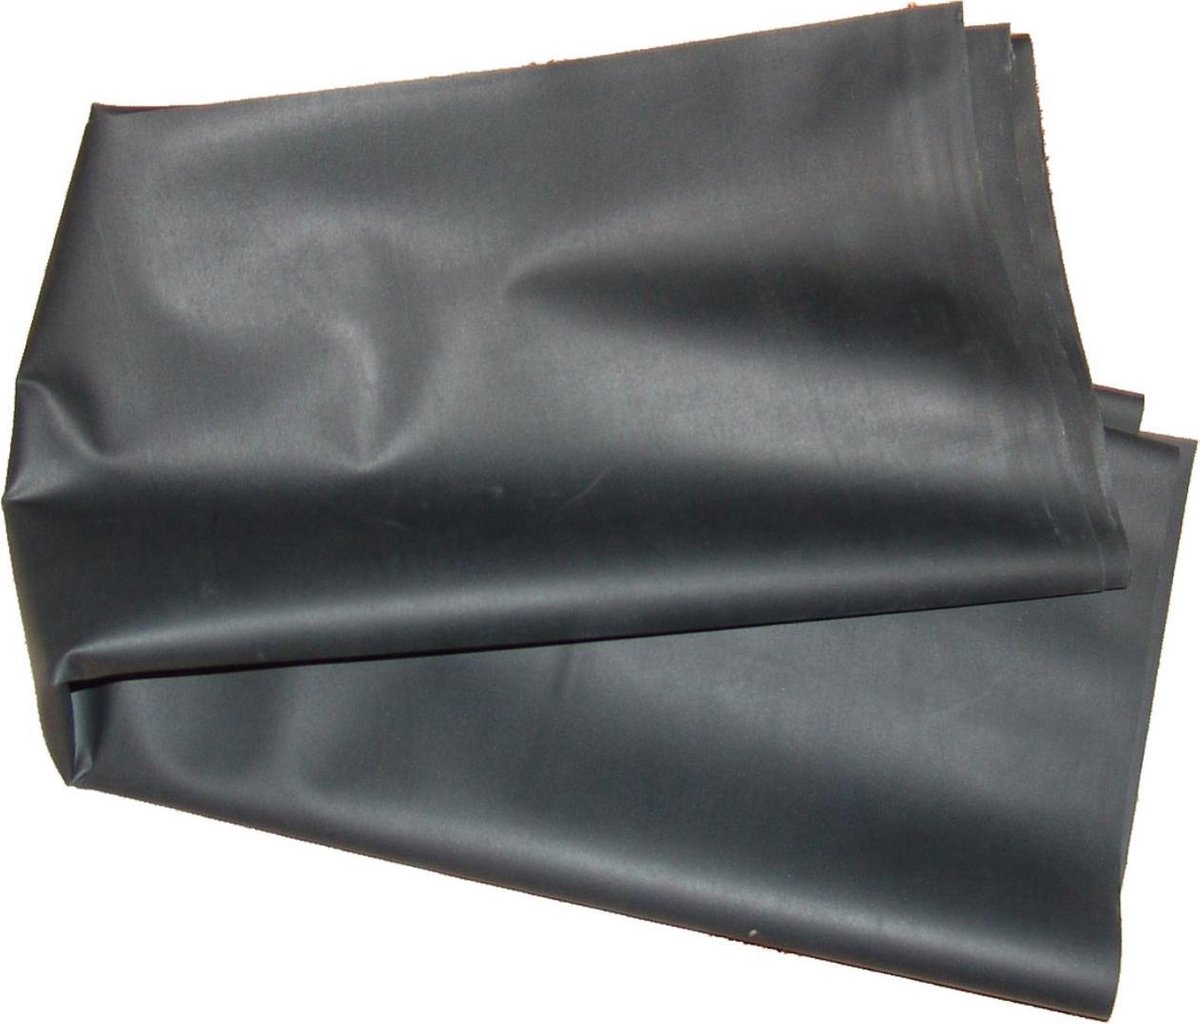 Rubber laken - bedzeil - zwart natuurrubber - 90 x 200 cm | bol.com